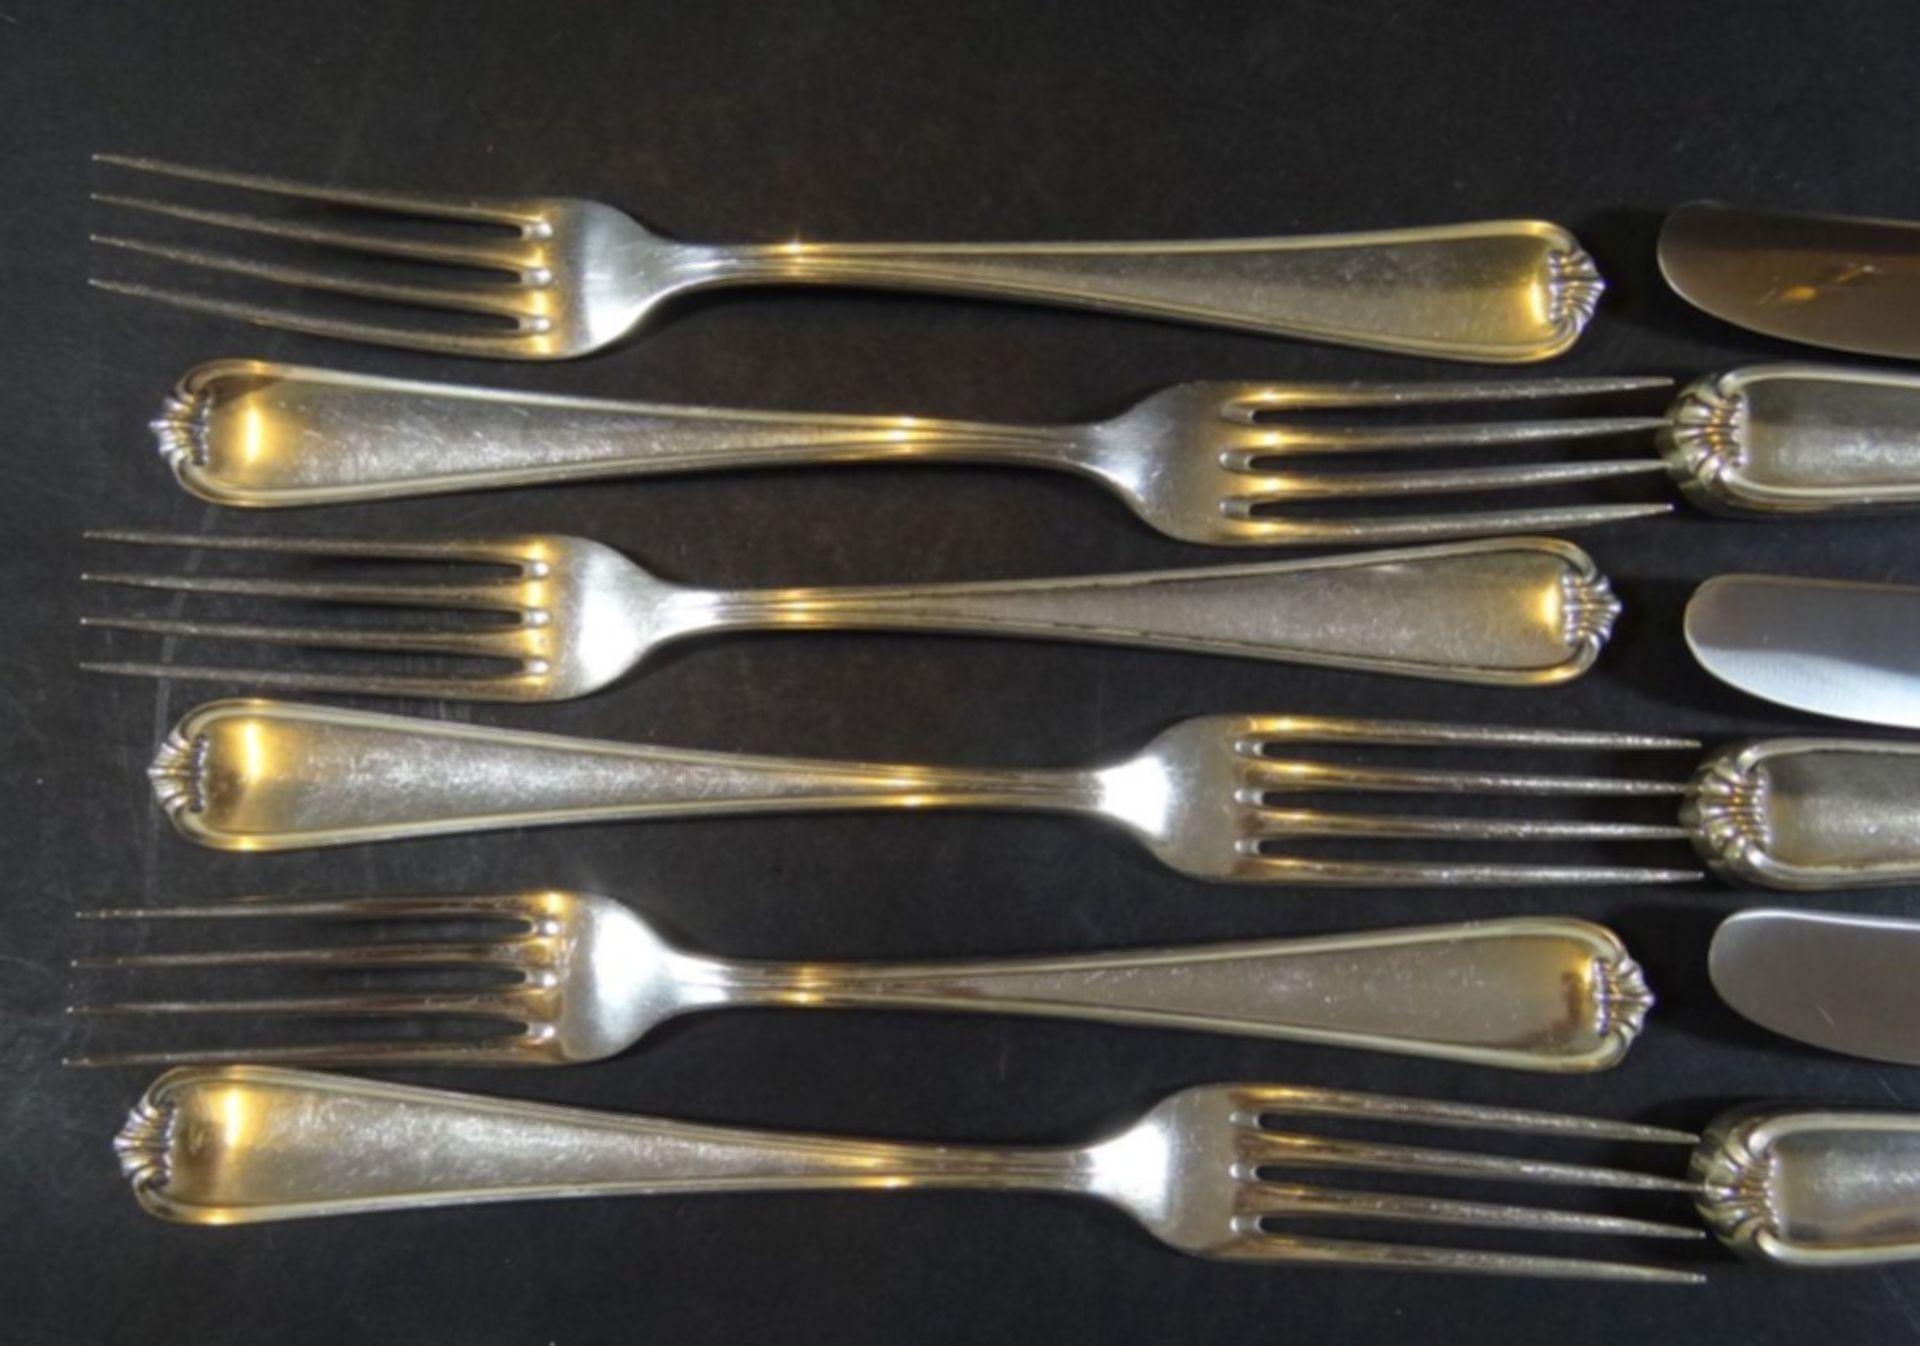 6 Speise-Messer und Gabeln, Silber-800, L-25 cm, Gabeln  zus. ca. 384 gr., Messer zus. 516 gr. - Bild 2 aus 5